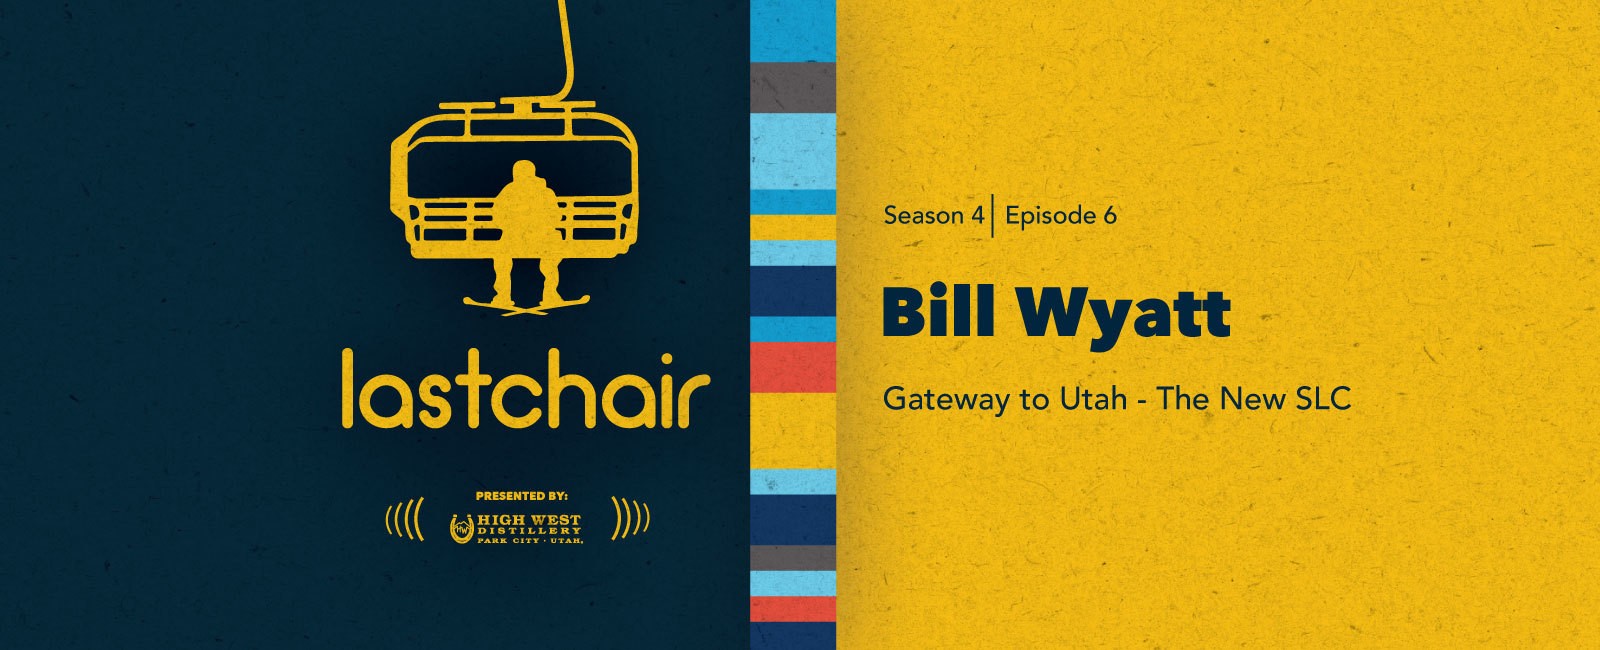 Bill Wyatt: Gateway to Utah - The New SLC